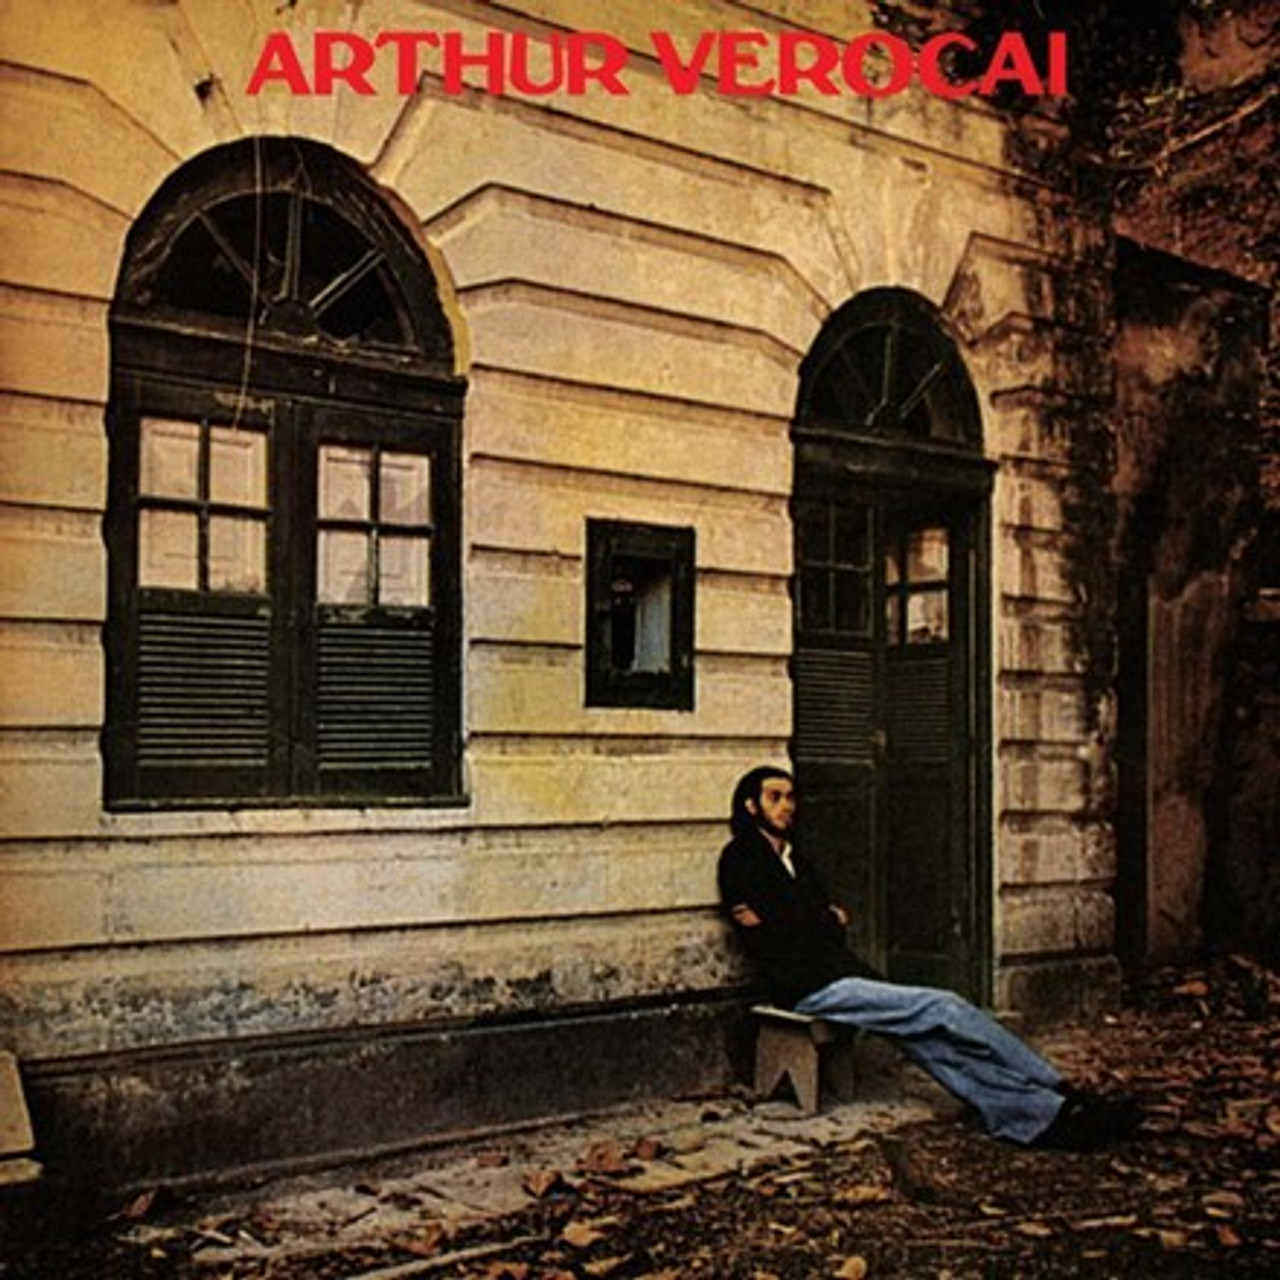 Arthur Verocai - Arthur Verocai - (Vinyl LP)